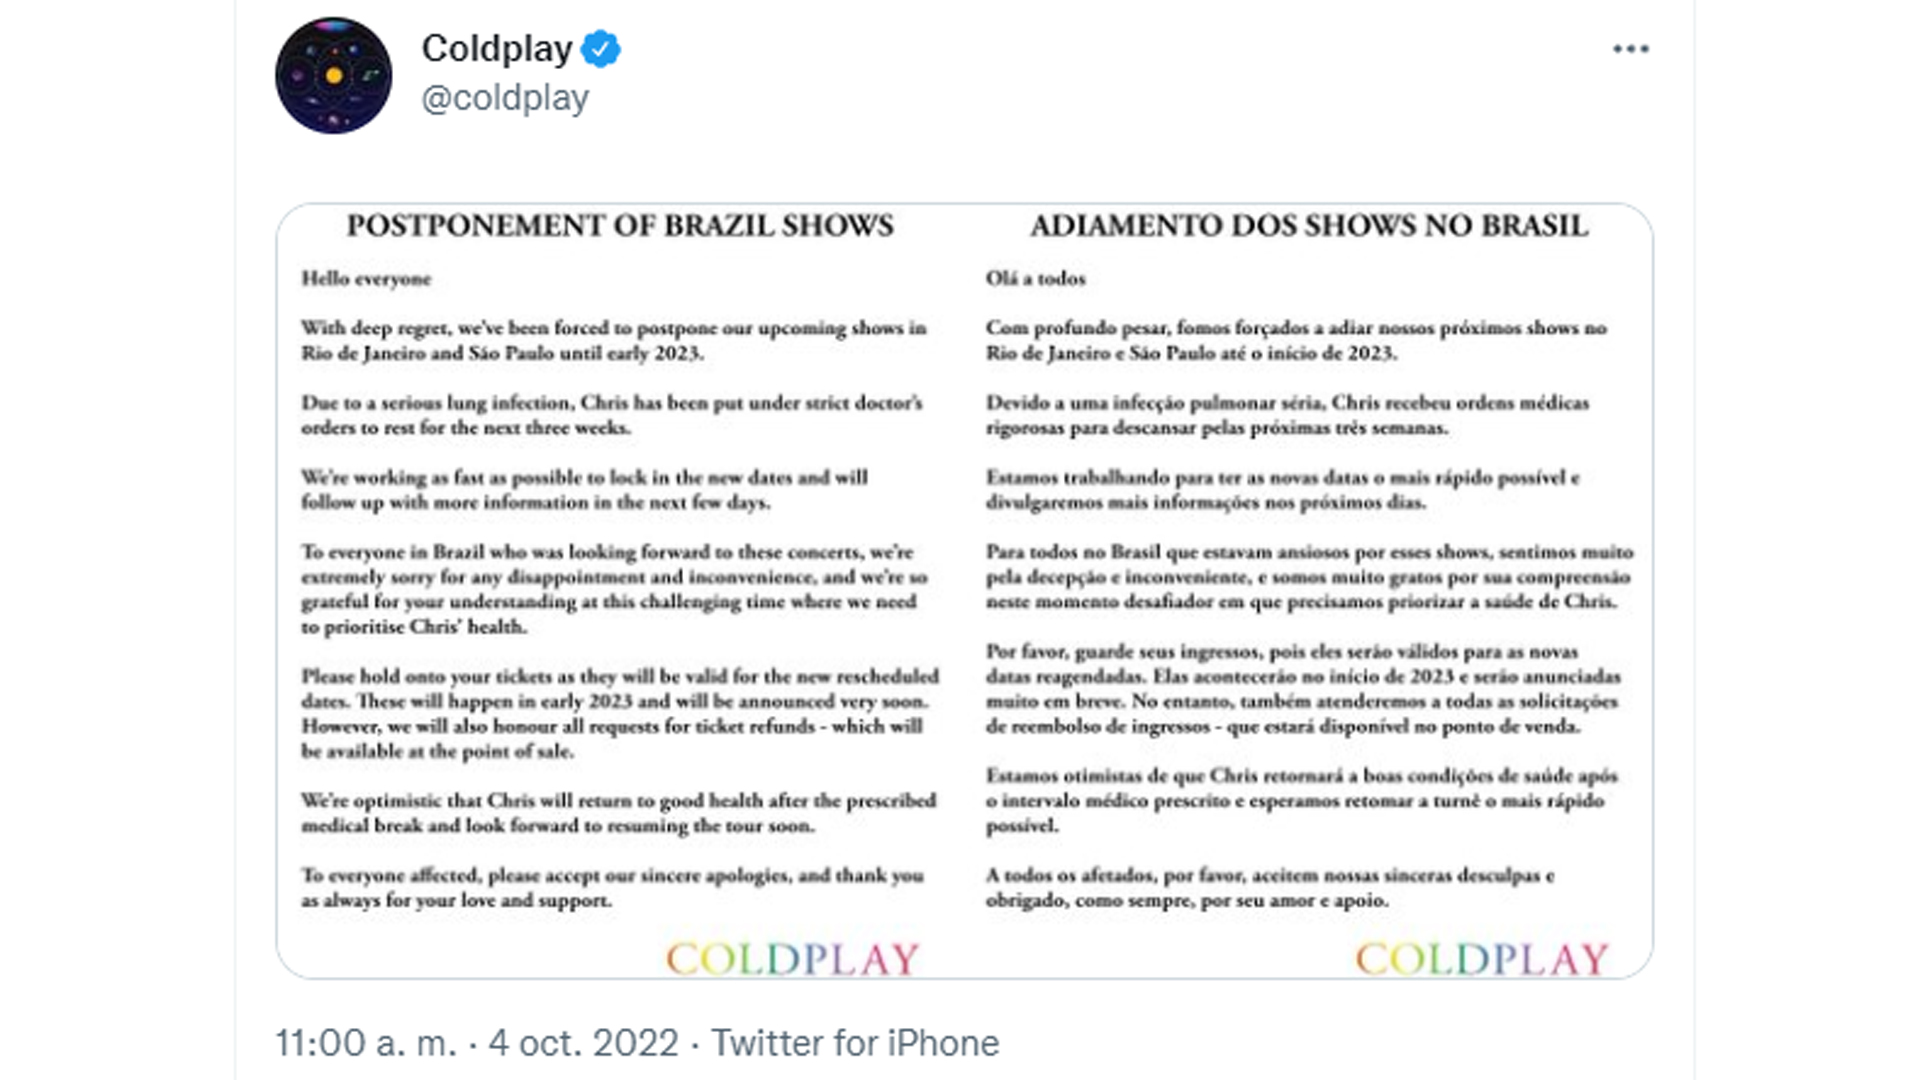 El comunicado de Coldplay sobre la postergación de sus recitales en Brasil